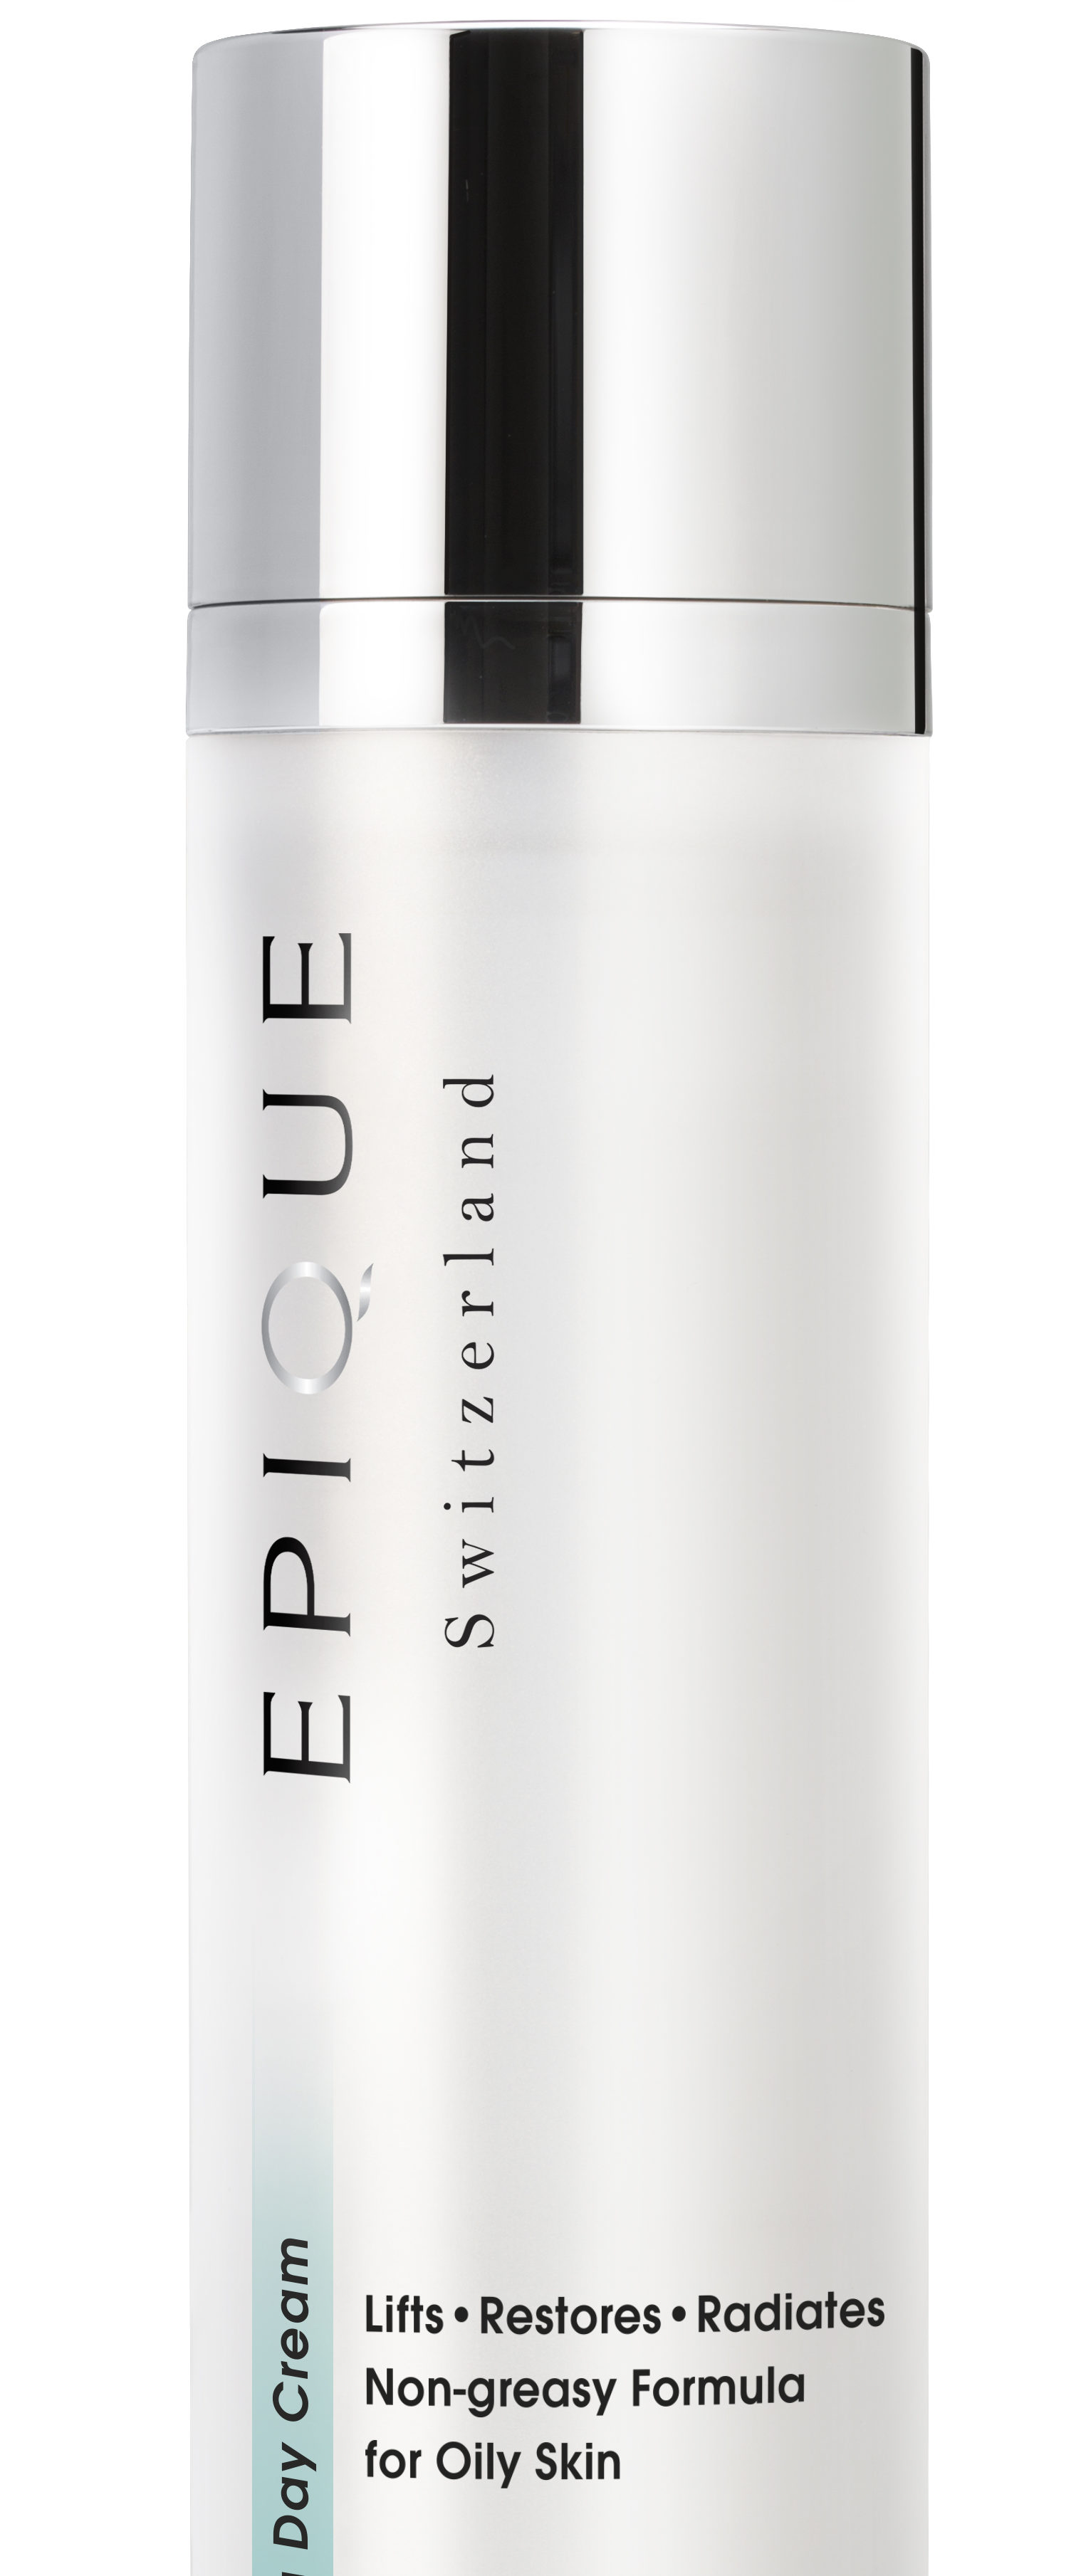 Re-balance your Oily skin: Epique Day Balancing Cream.